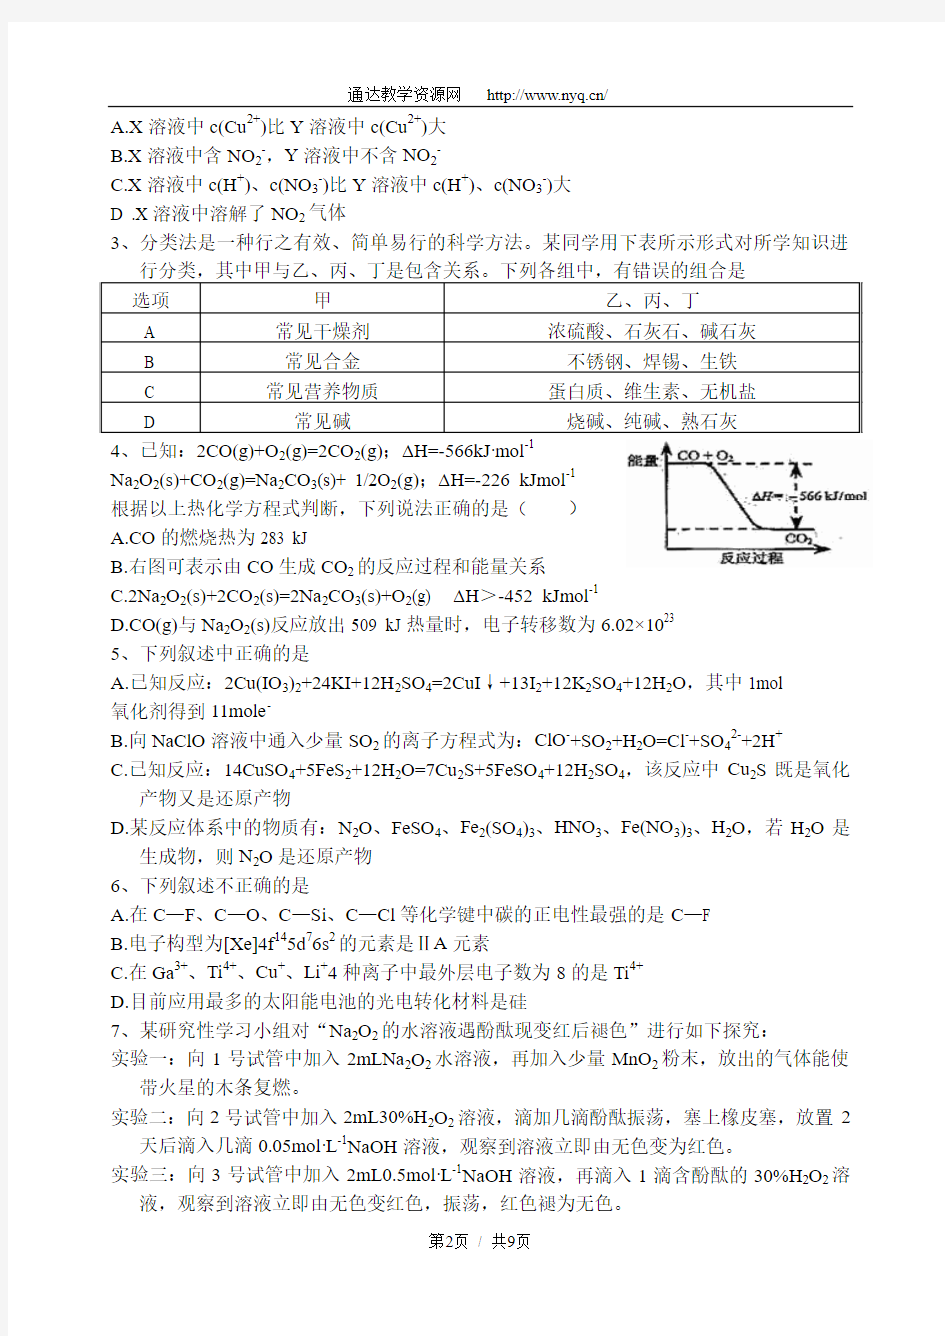 2010年湖北省高中化学竞赛初赛试题、答案及评分标准(完整word版)